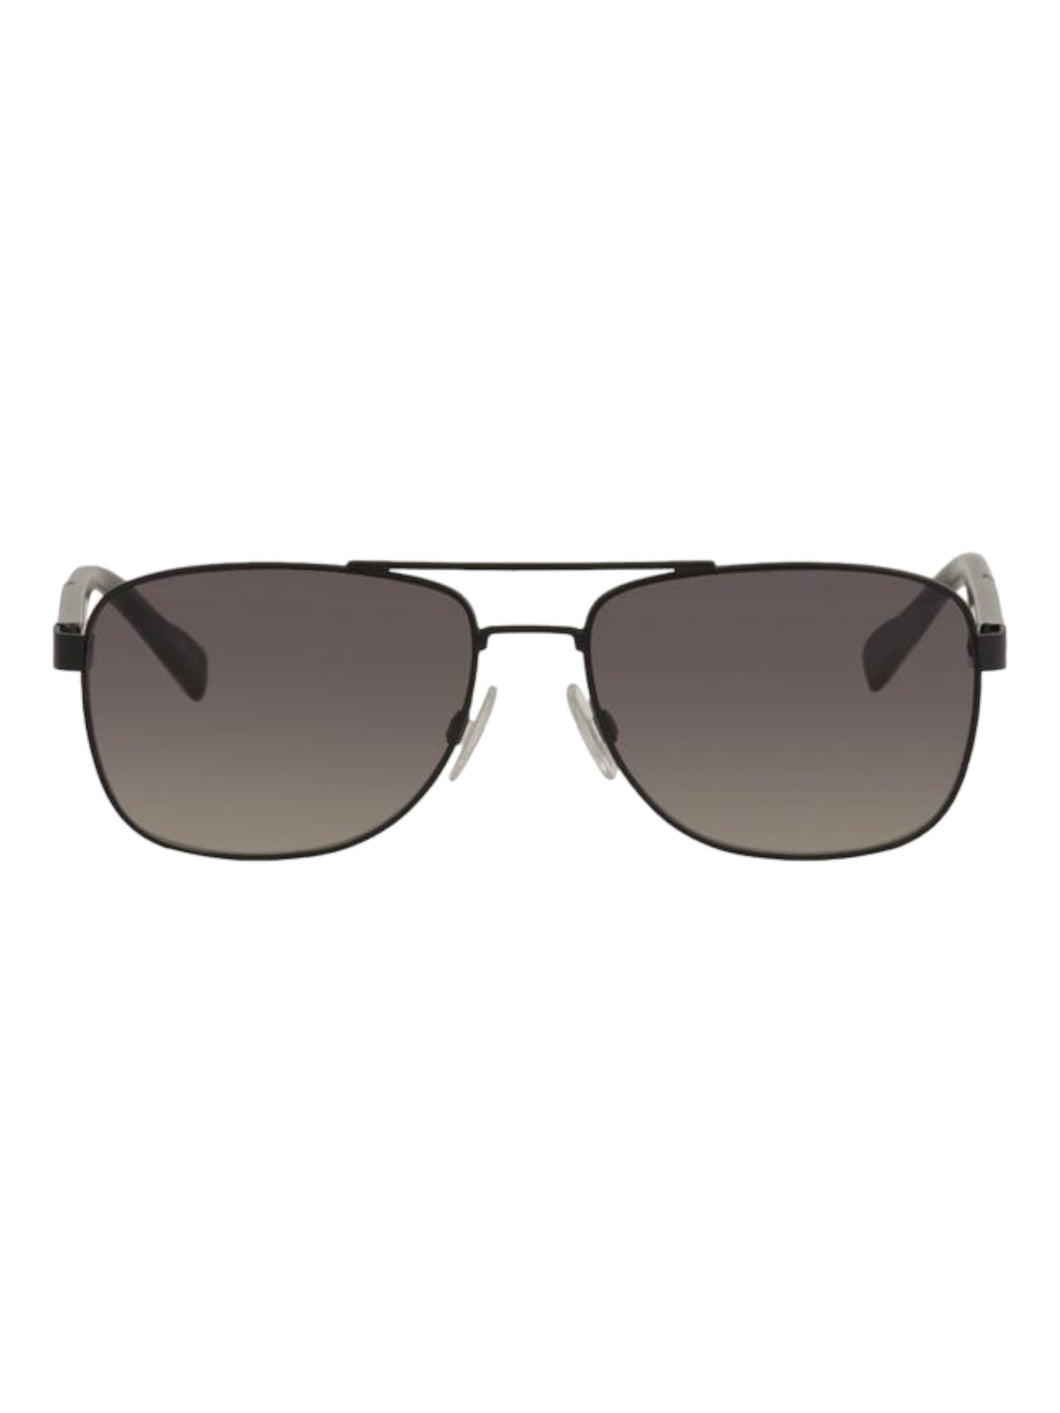 Hugo Boss Orange Men's 0133/S Matte Black Pilot Sunglasses 58-16-140 MSRP$175